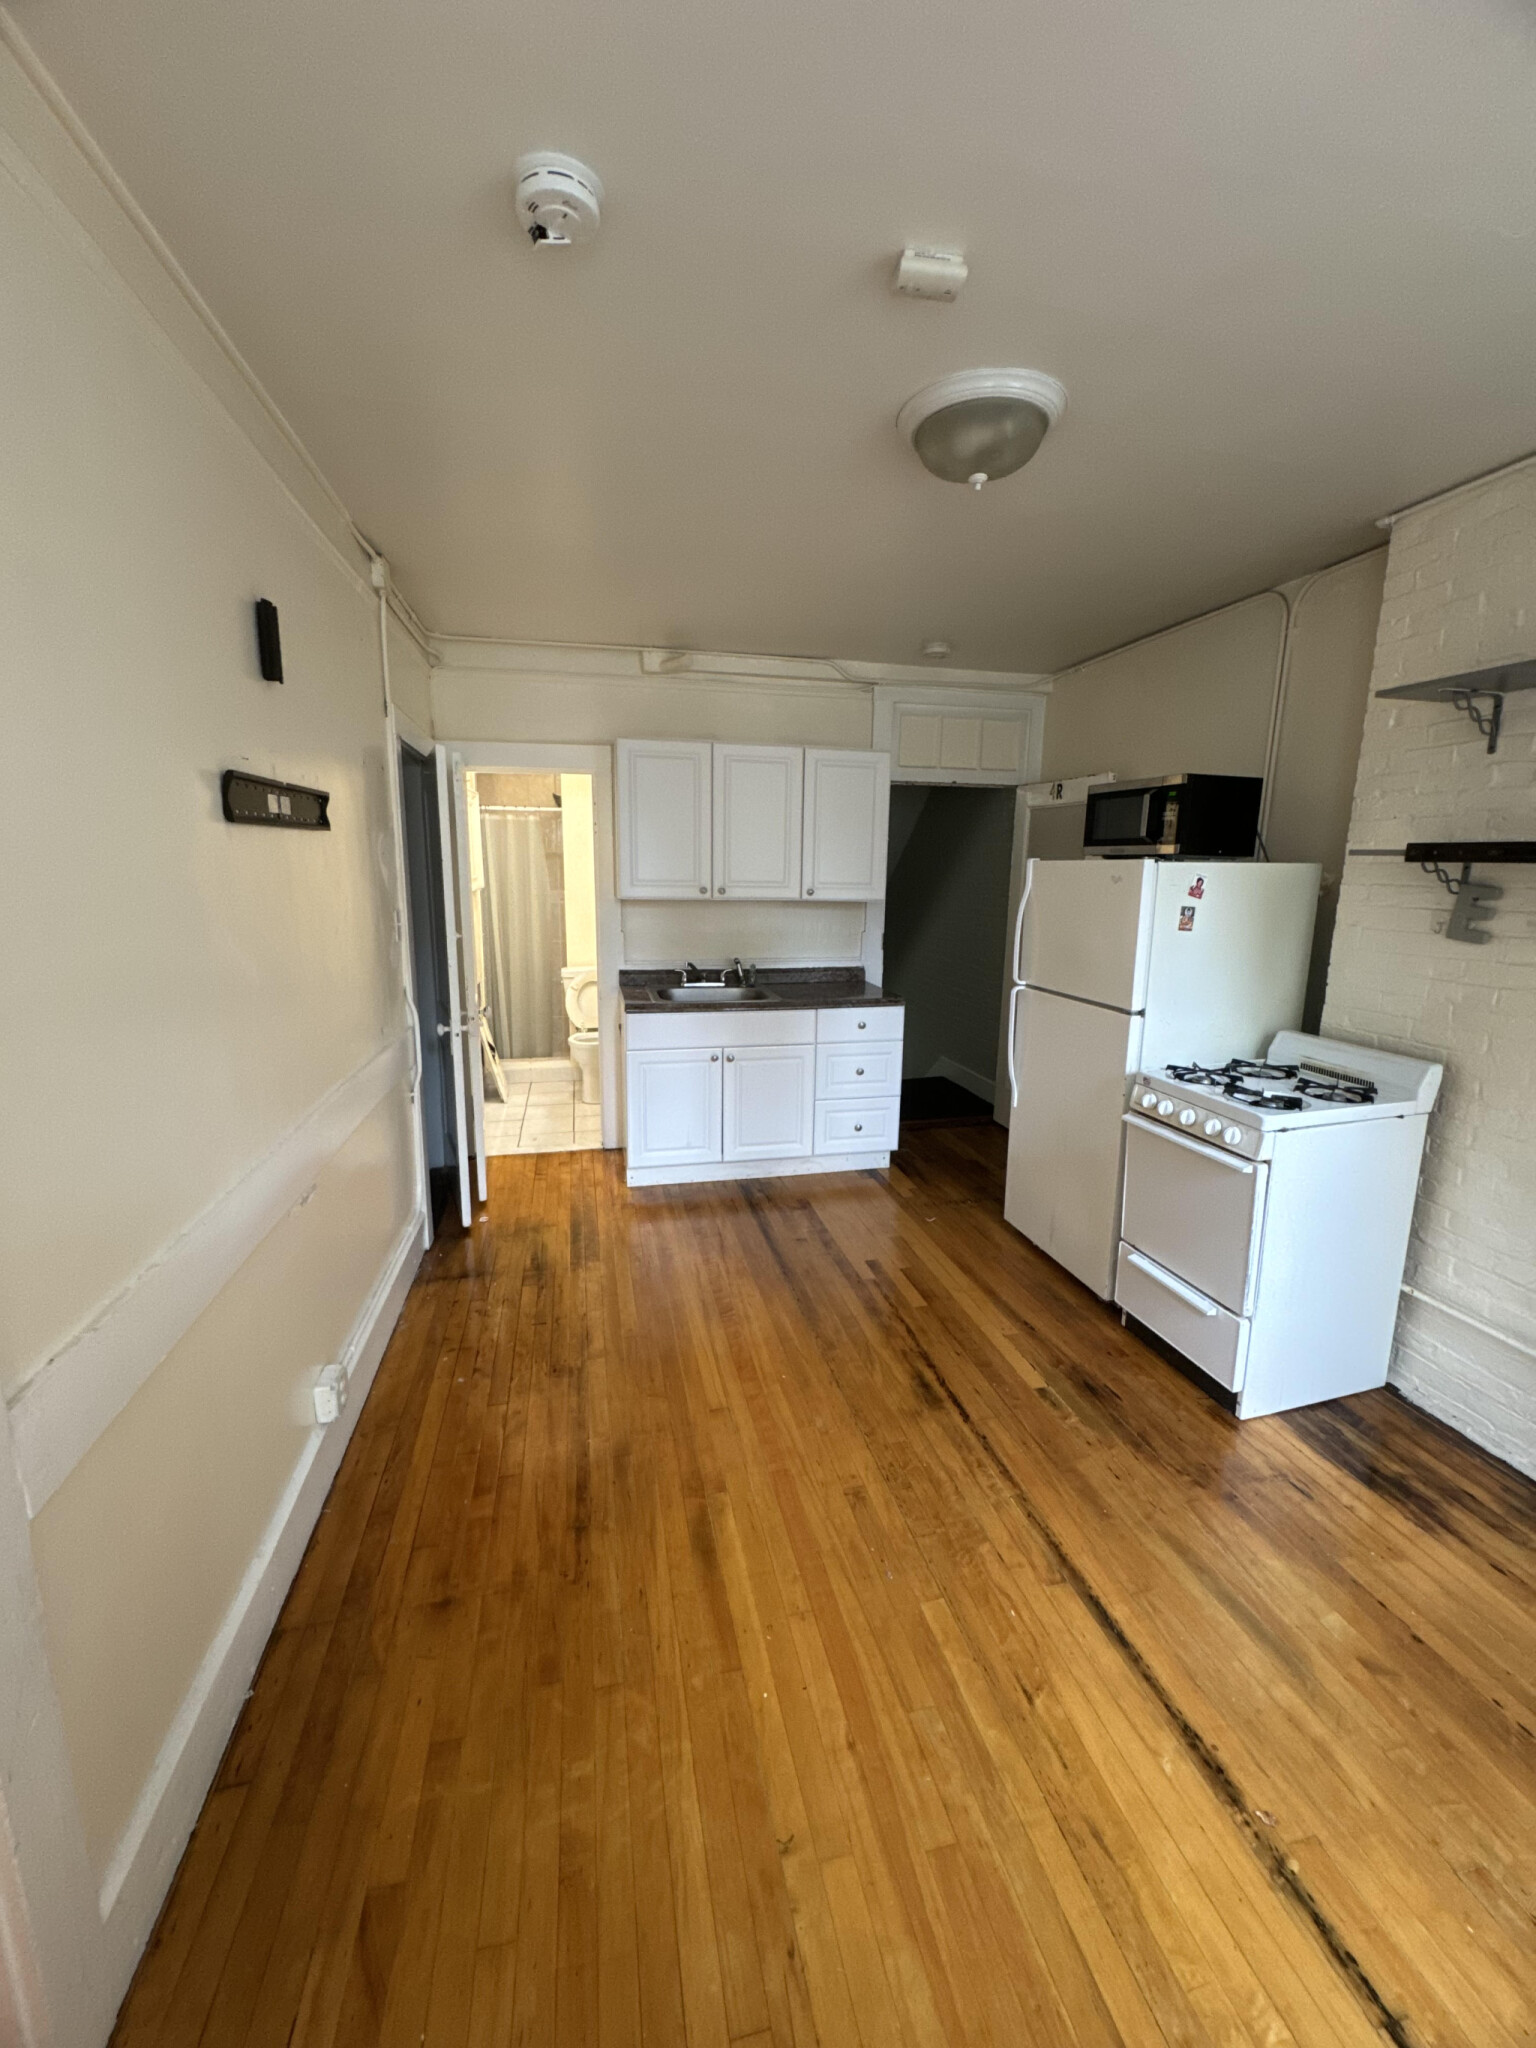 Photos of apartment on ENDICOTT St.,Boston MA 02113